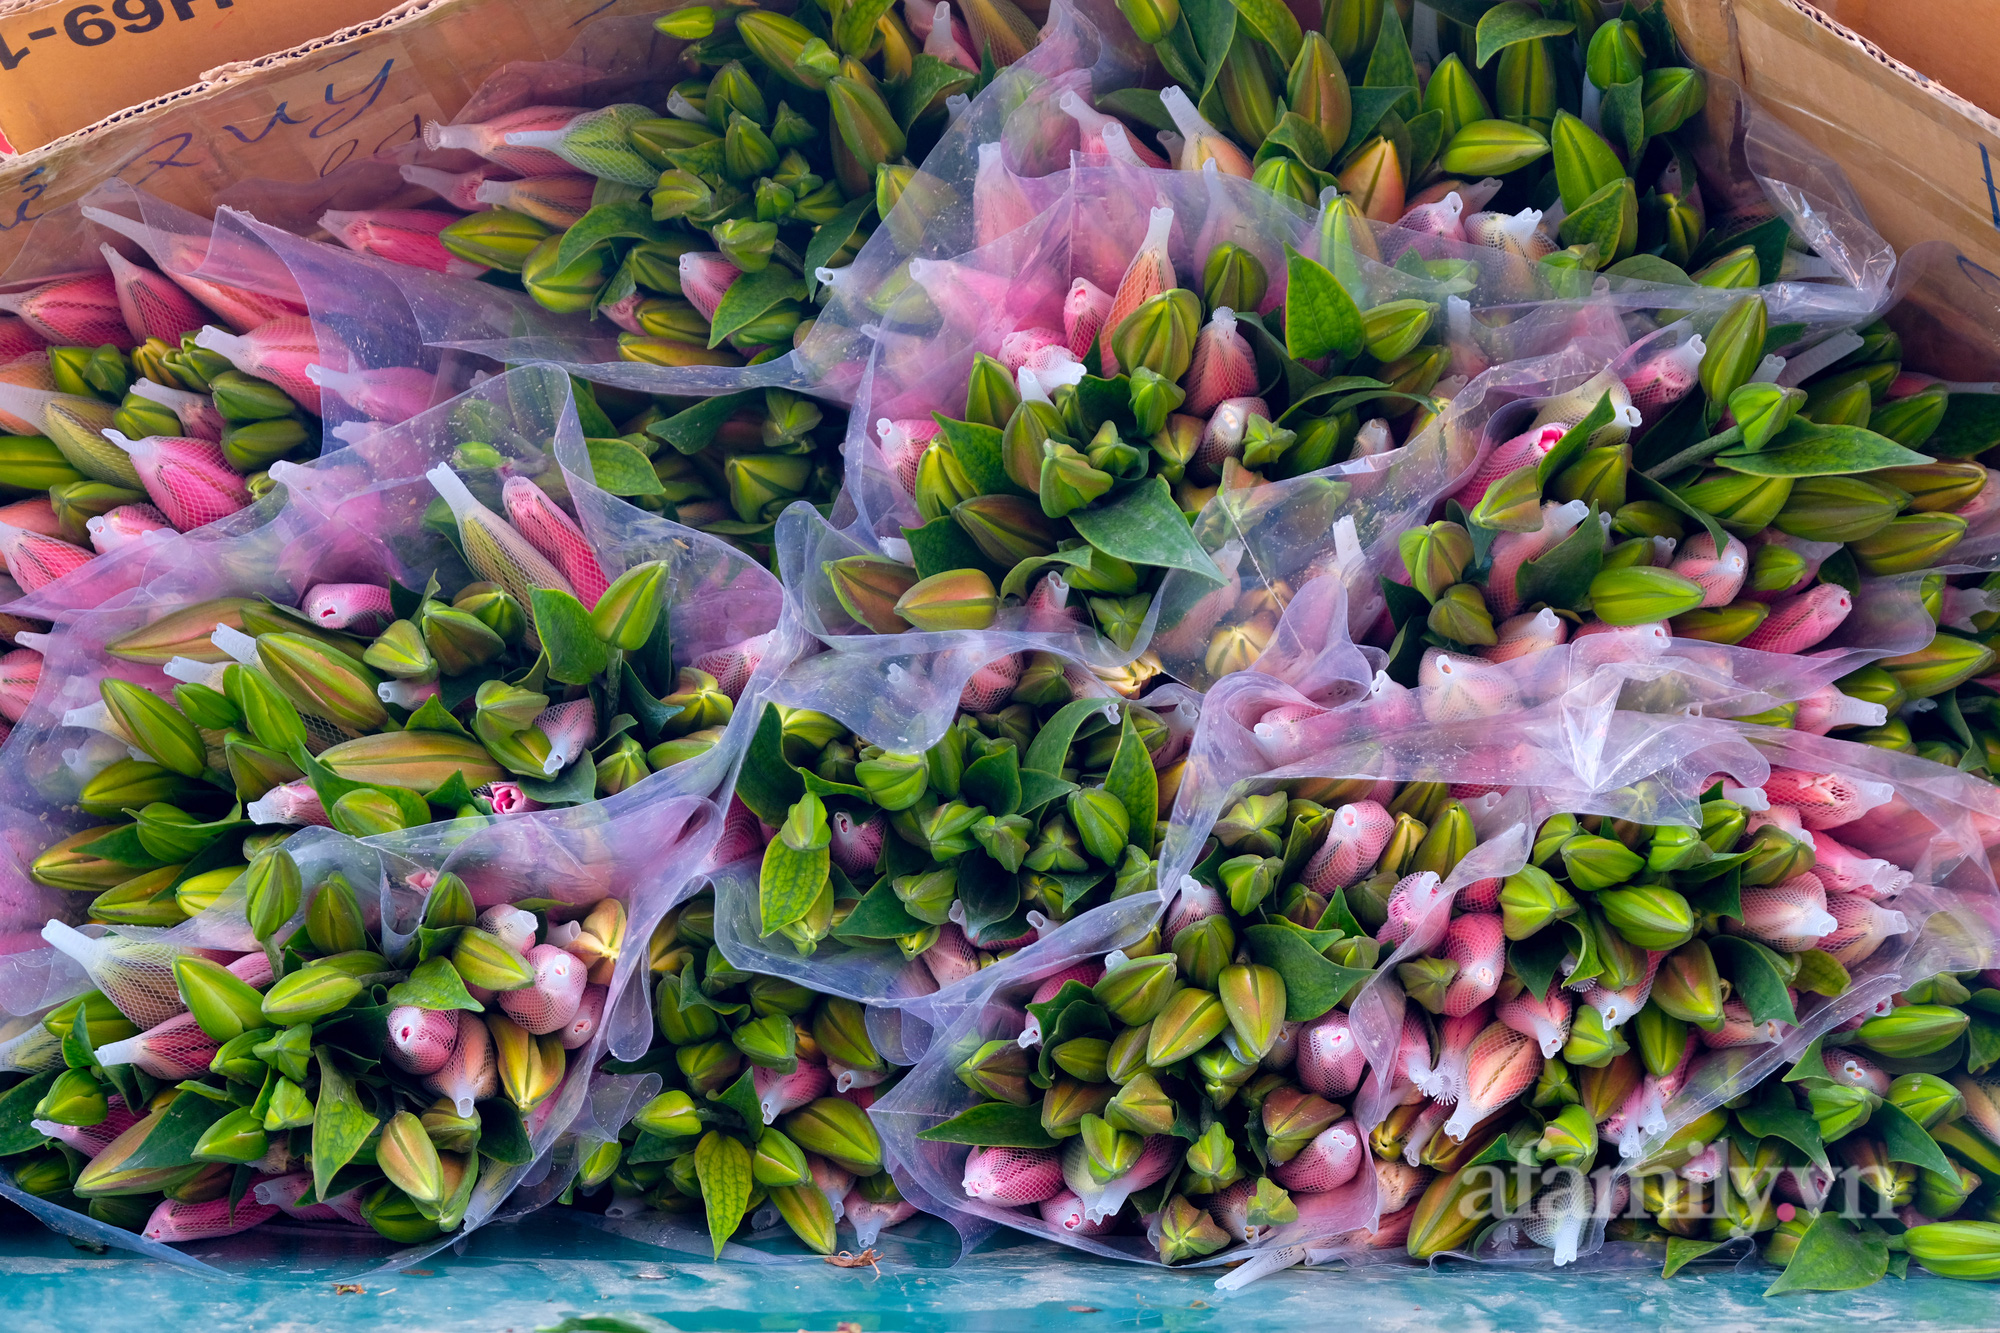 29 Tết đi chợ hoa Quảng Bá: Giá hoa tăng 20% so với ngày thường, mua nhanh 5 cành đào đông cắm đẹp nhà mà hết 2,2 triệu - Ảnh 11.